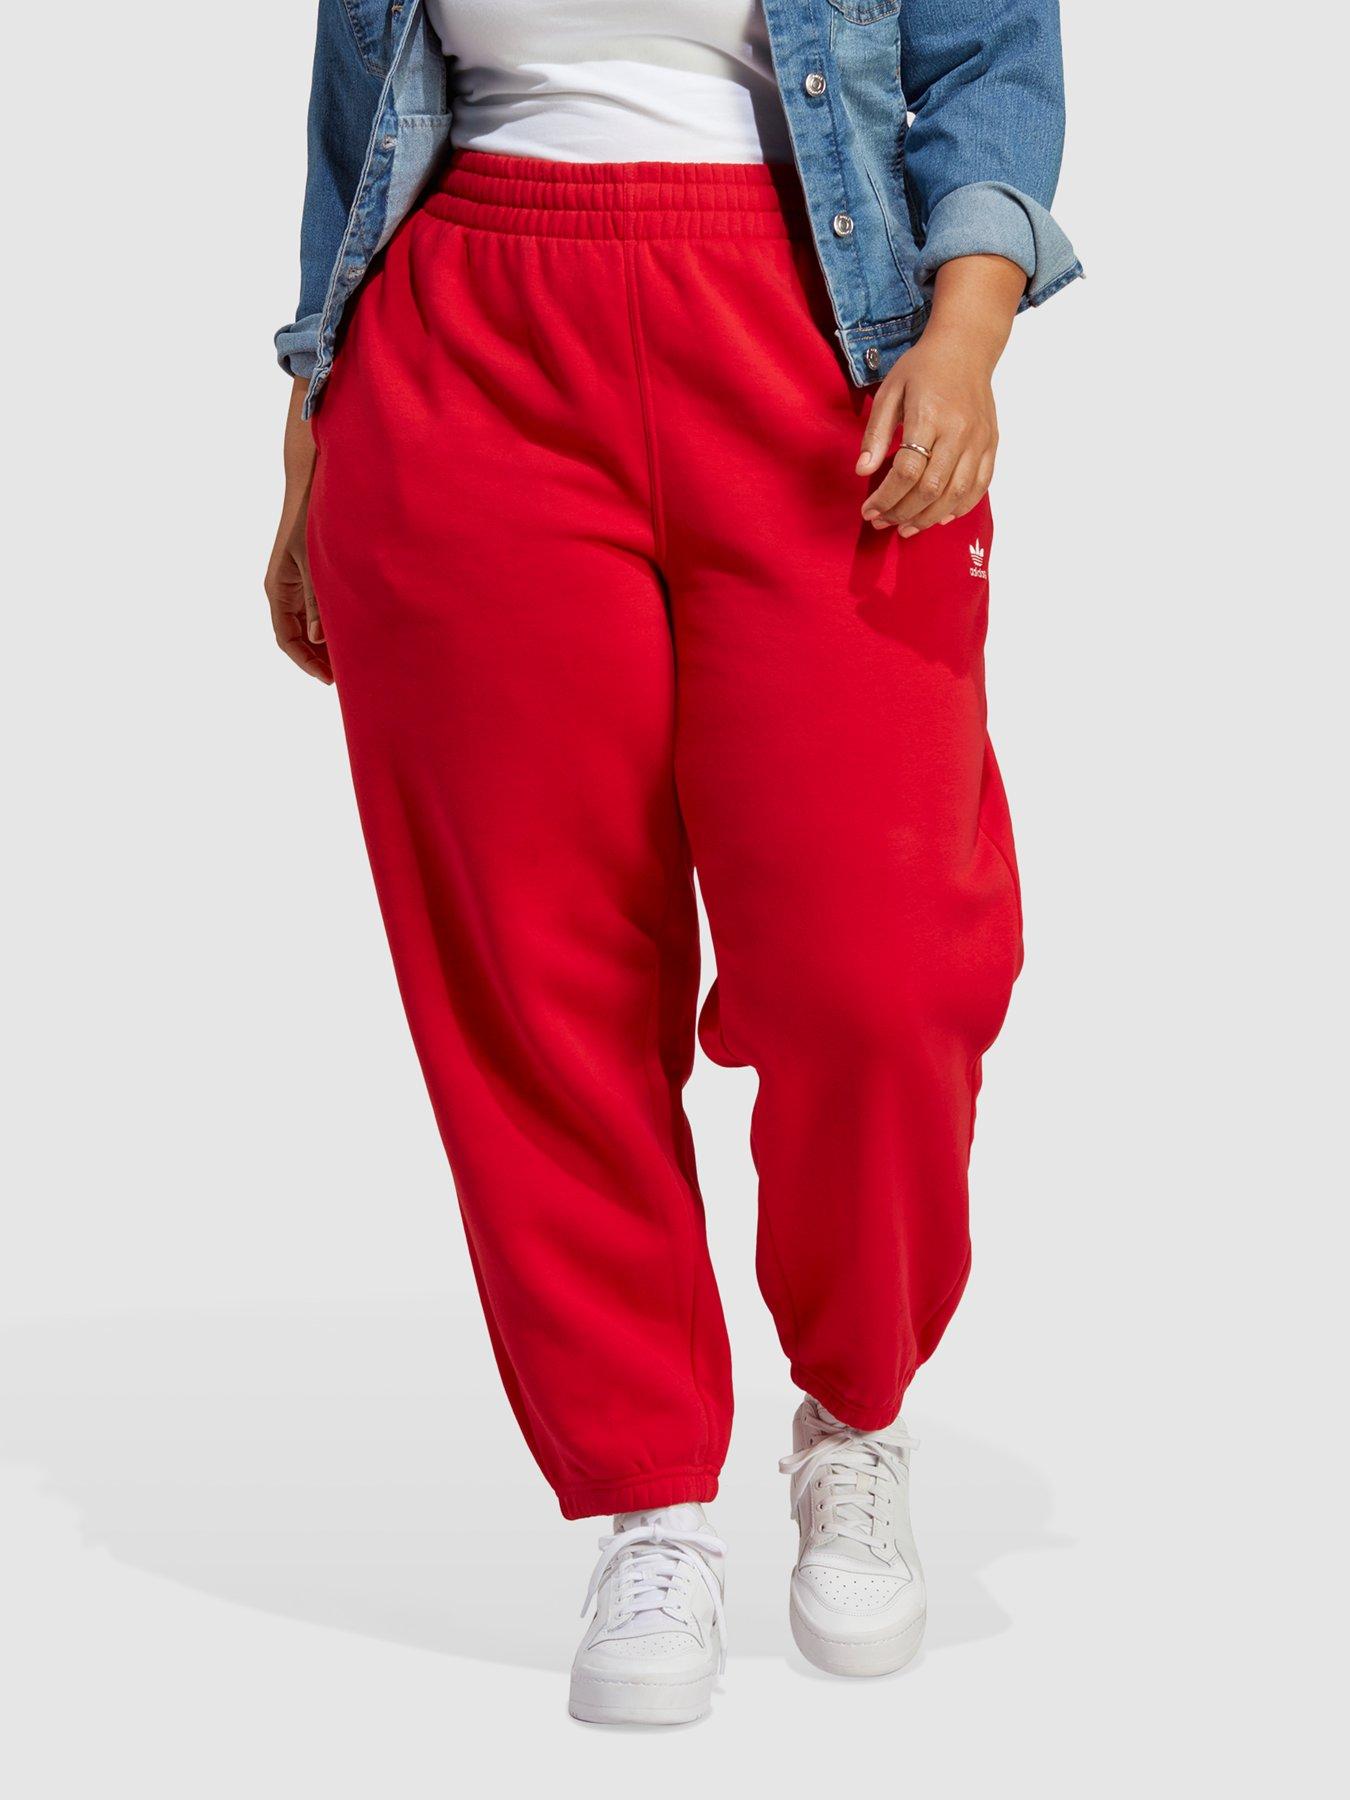 adidas Originals Adicolor Pants - Plus Size - Red